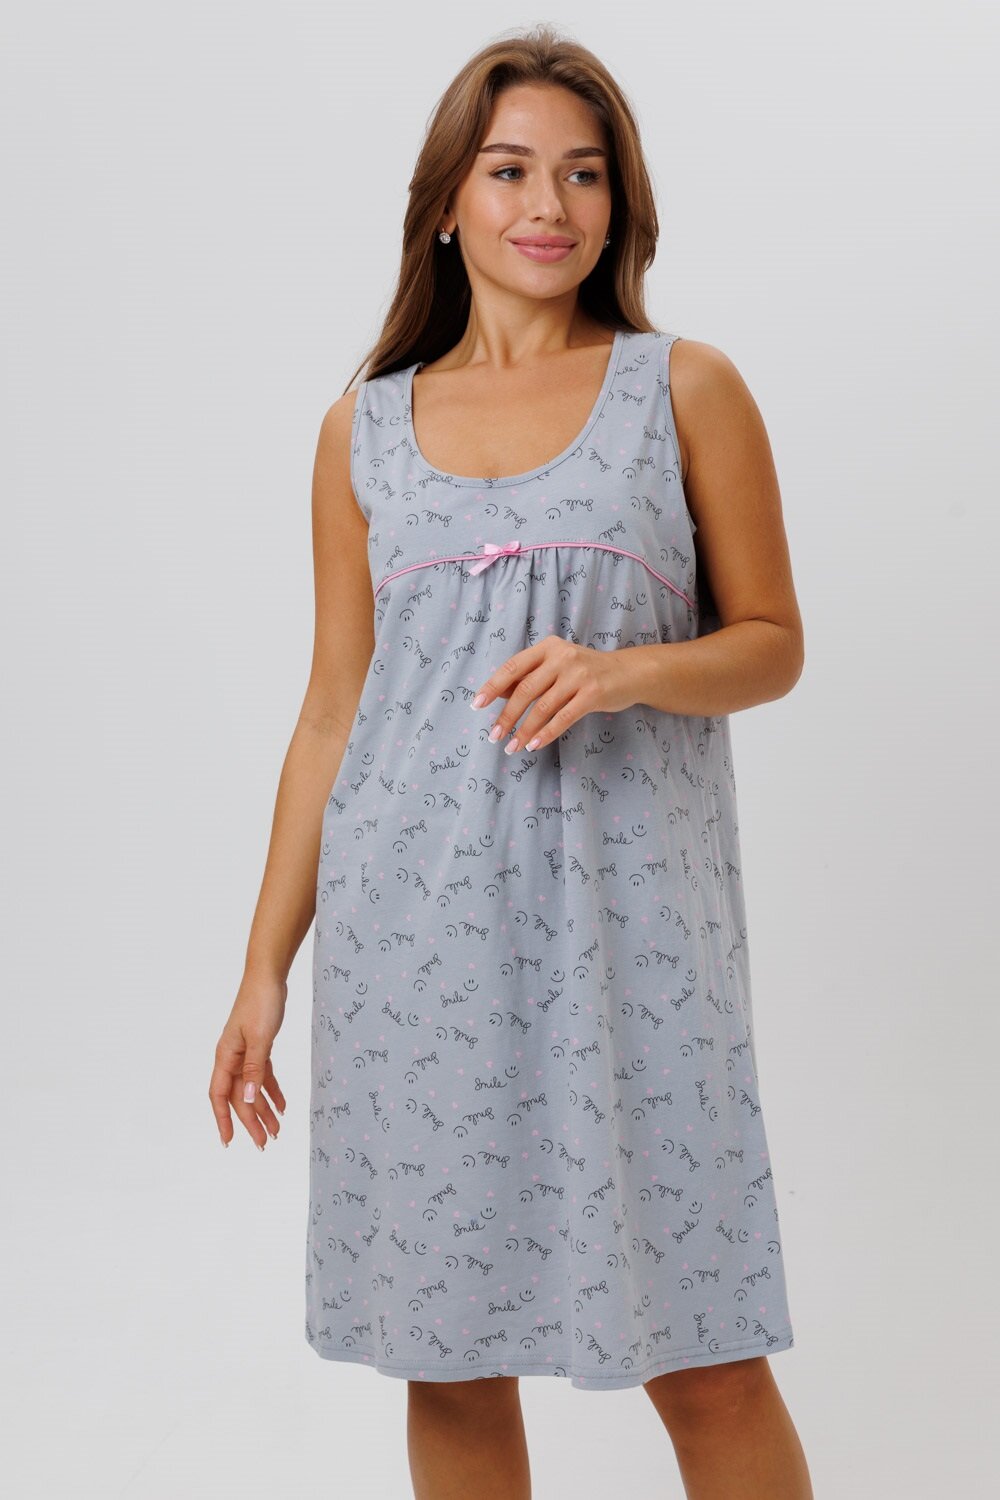 Сорочка женская ночная Modellini 1629/2 цвет серый, размер 62 - фотография № 8